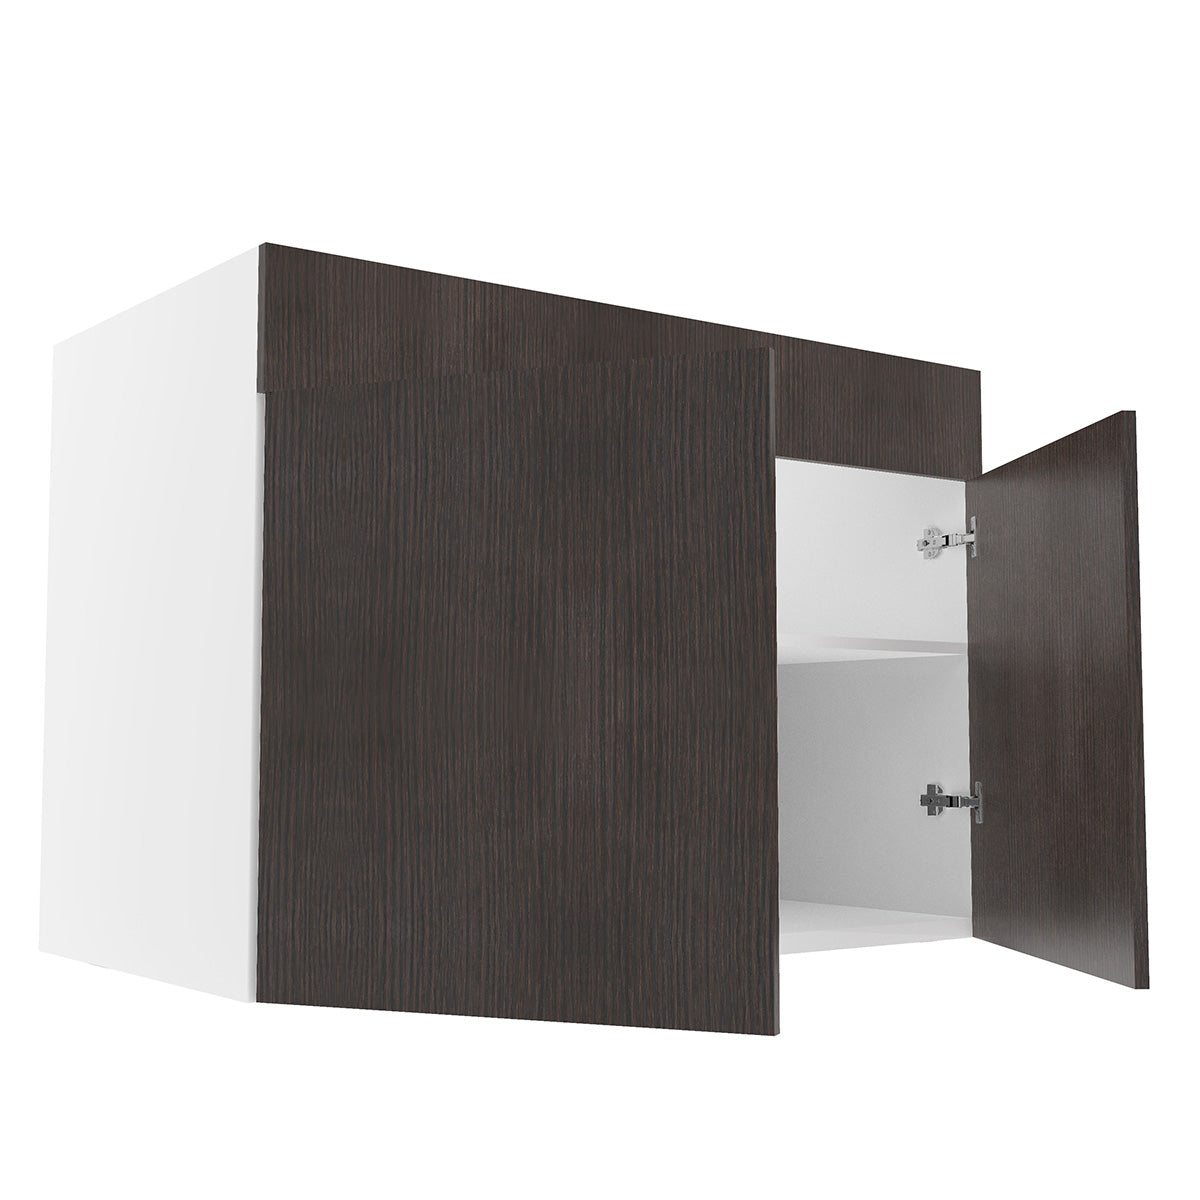 RTA - Brown Oak - Sink Base Cabinets | 42"W x 30"H x 23.8"D